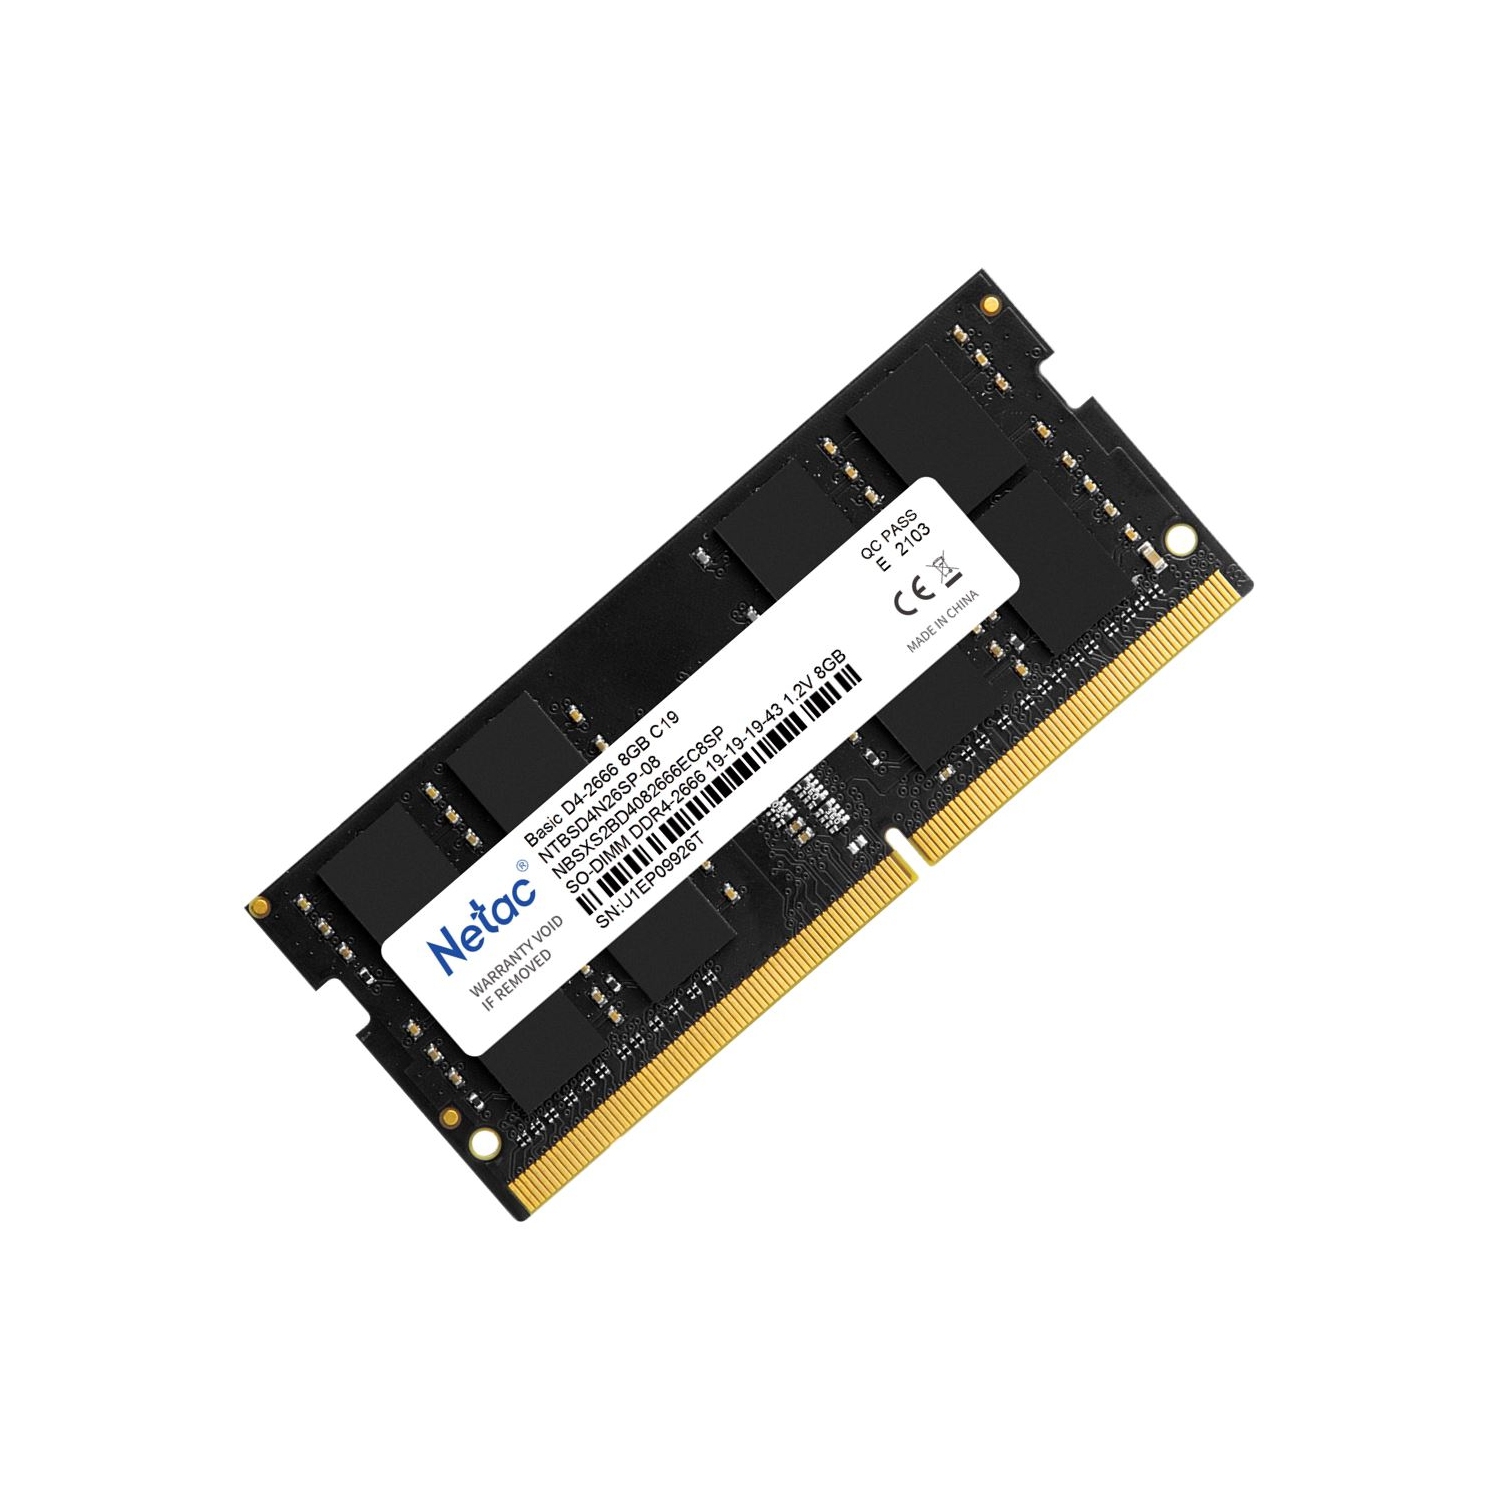 New Netac 8GB DDR4 Ram 2666MHz Laptop Memory Ram PC4-2666 1.2V CL19 260-Pin SO-DIMM